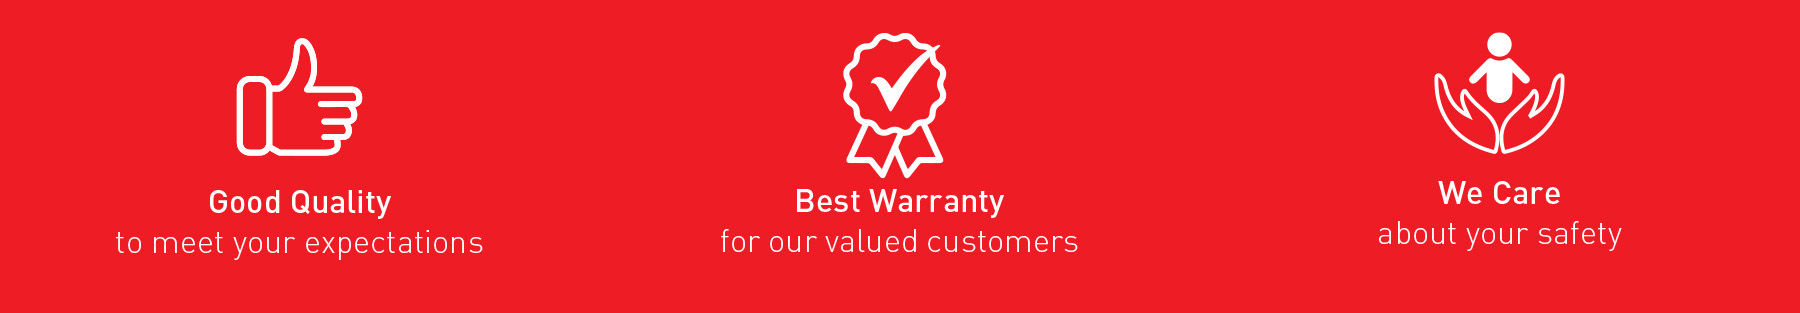 FREGO Good Quality Best Warranty We Care